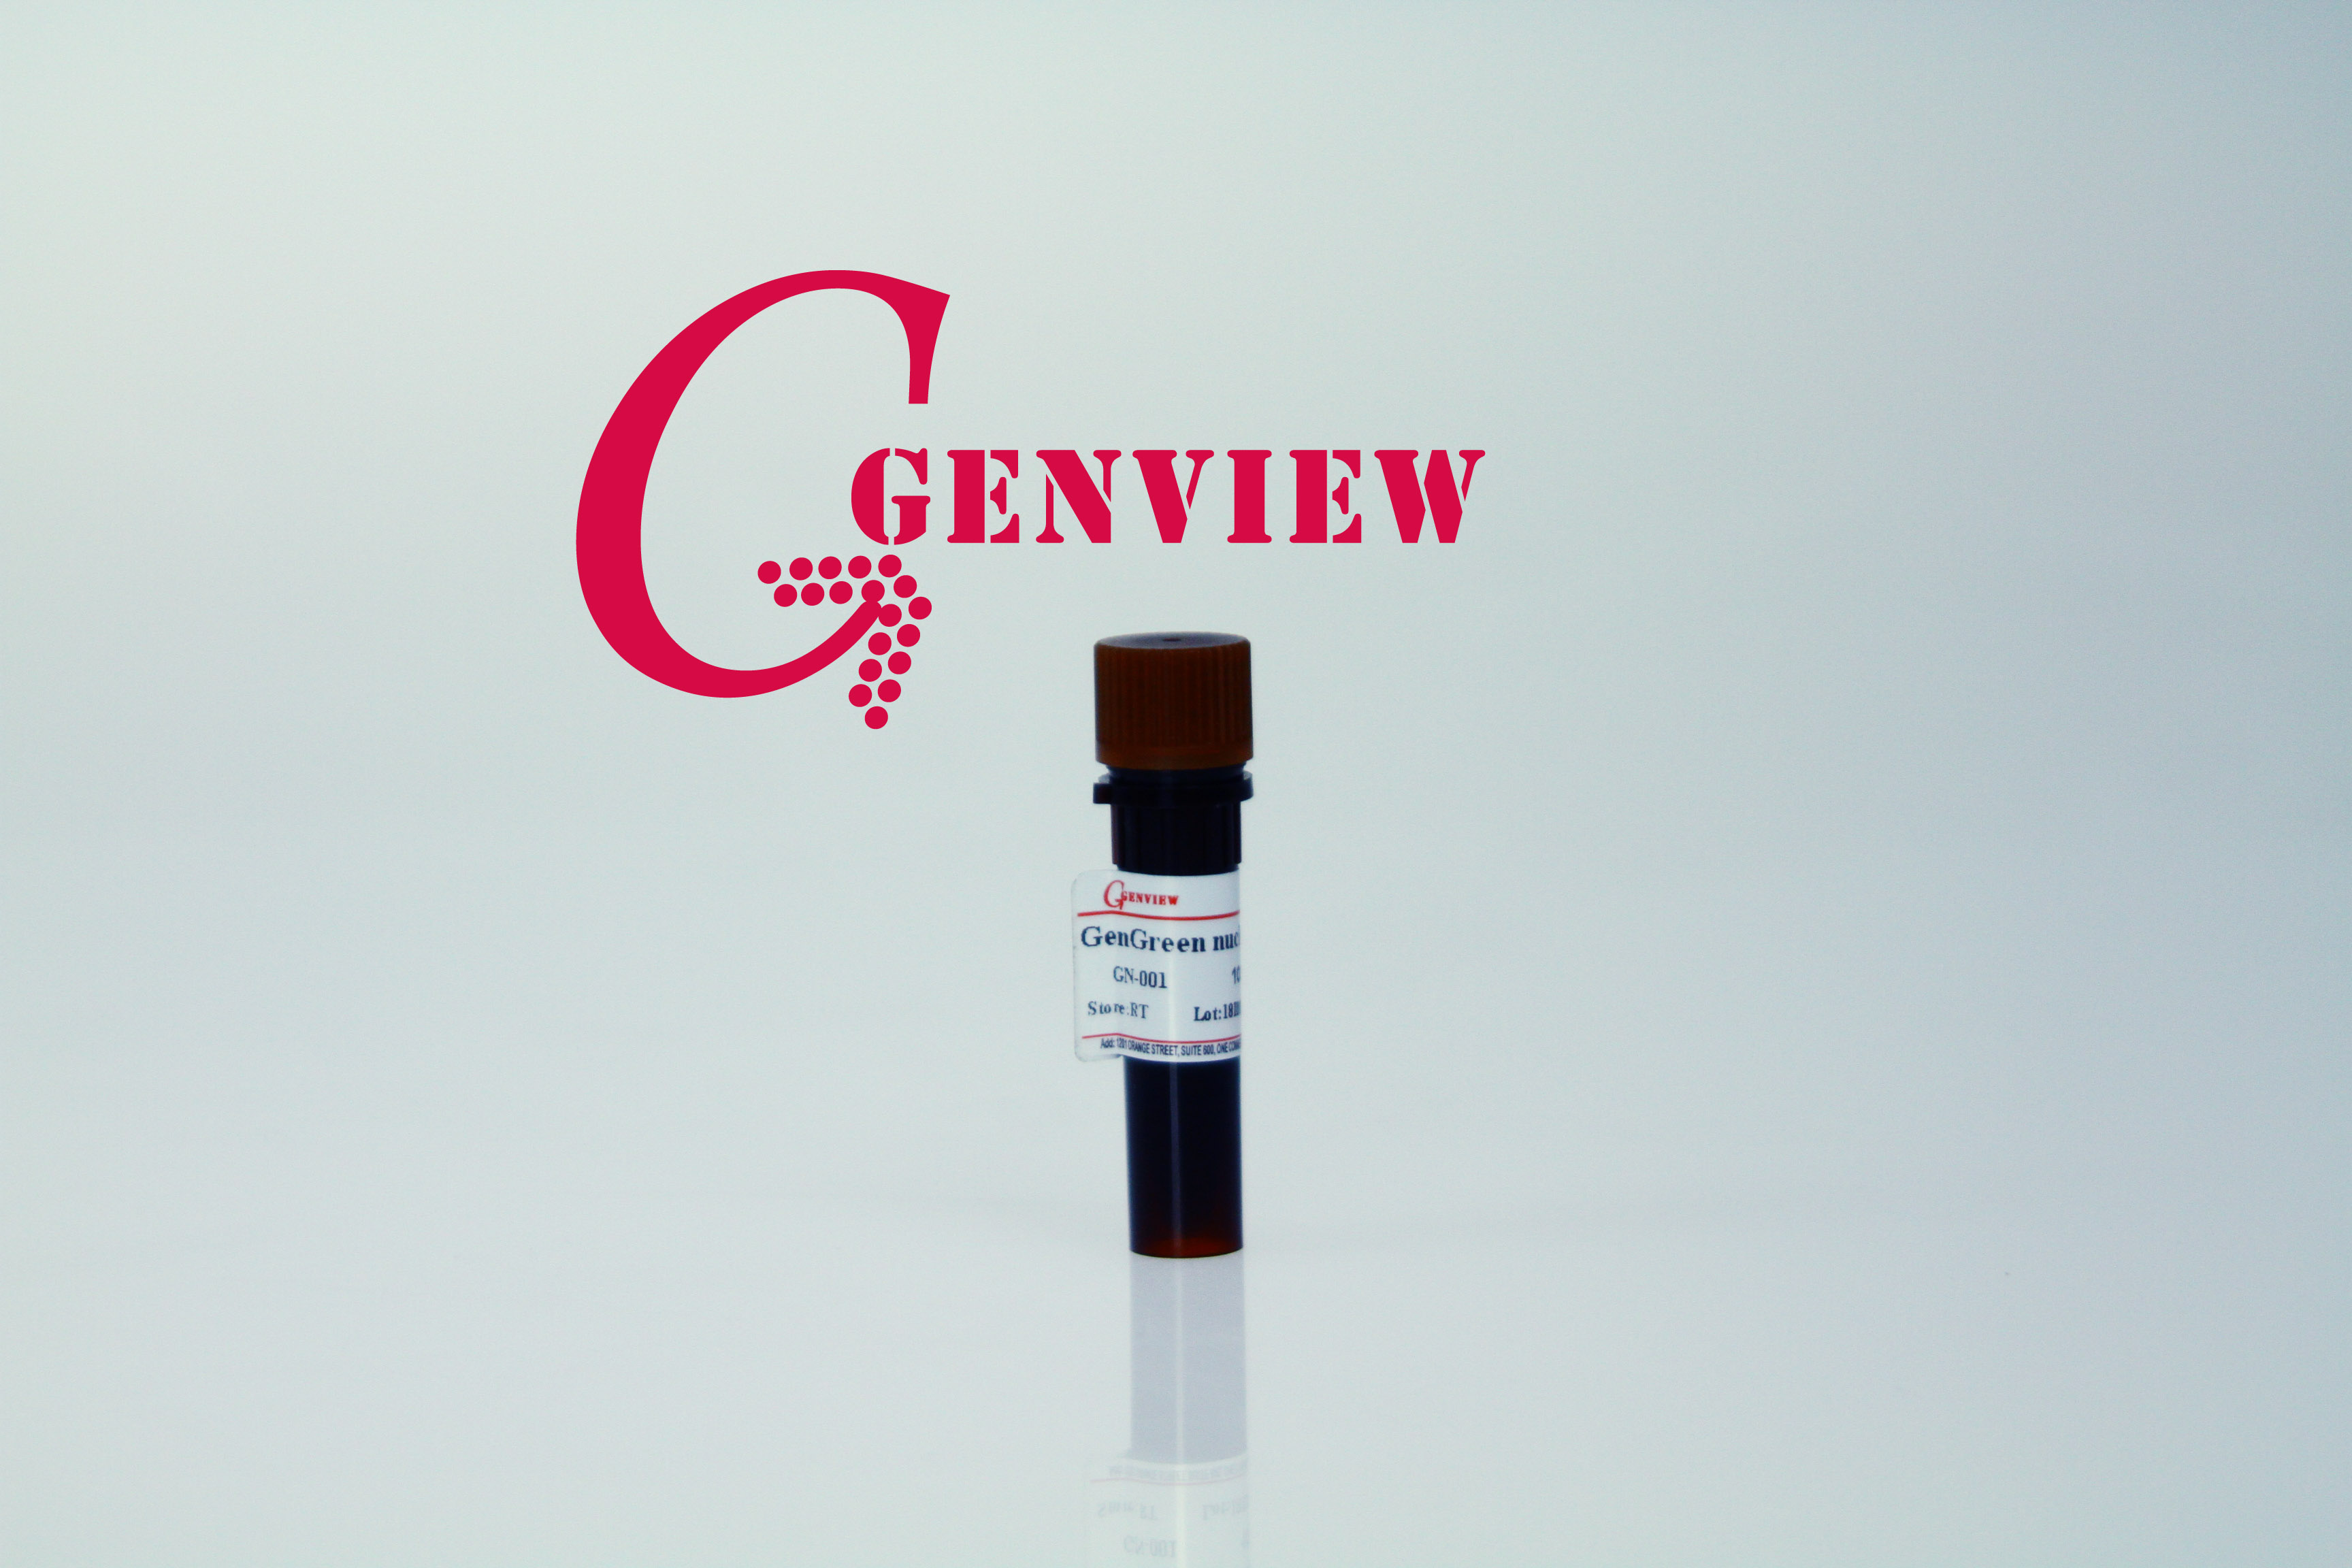 【Genview】GG1301-500UL GenGreen nucleic acid gel stain 核酸染料 